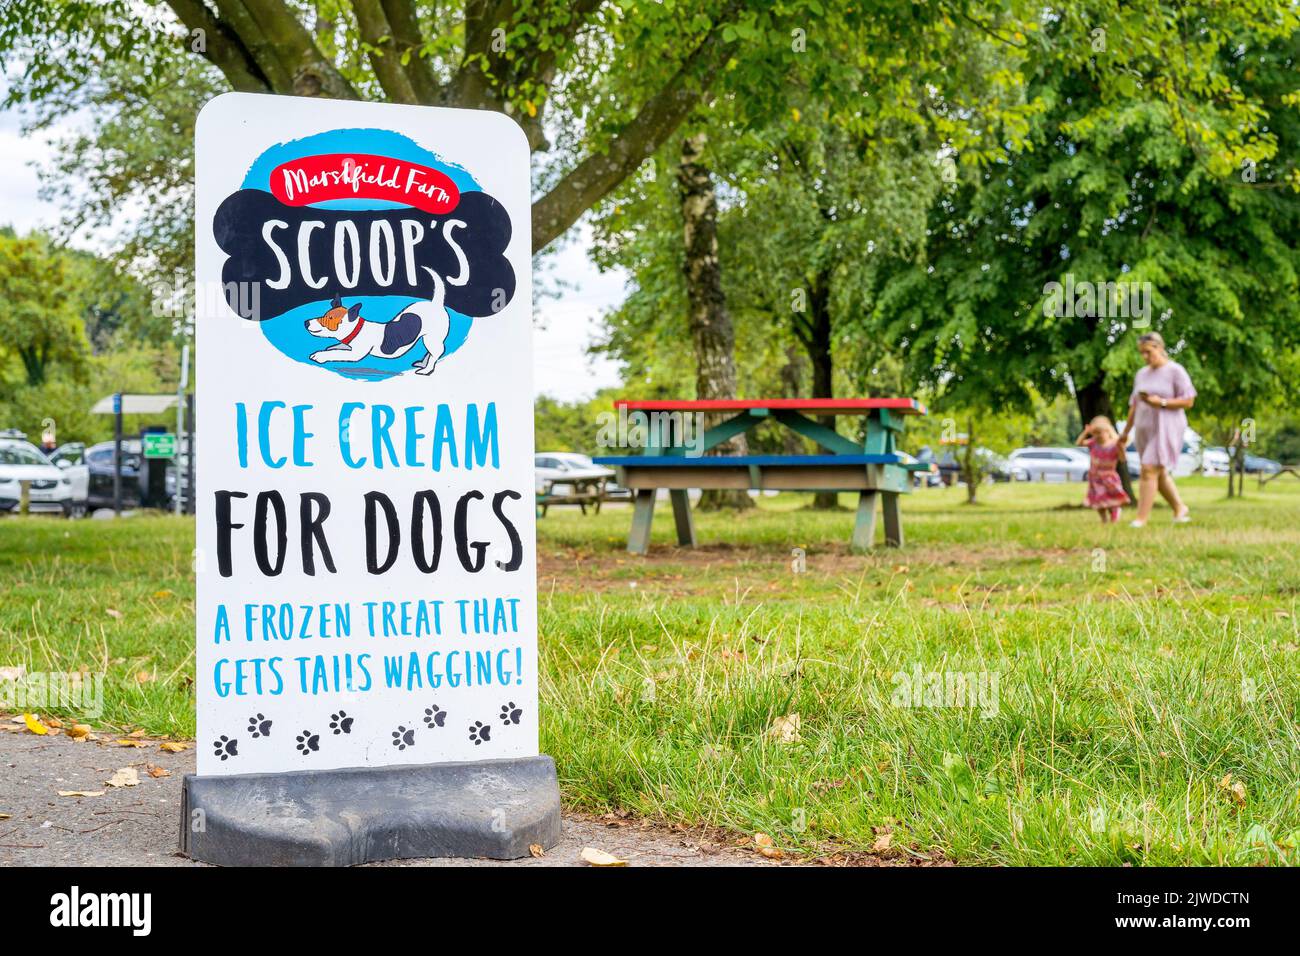 Primo piano nel parco pubblico del Regno Unito che vende gelati Scoop's appositamente fatti per i cani! Foto Stock